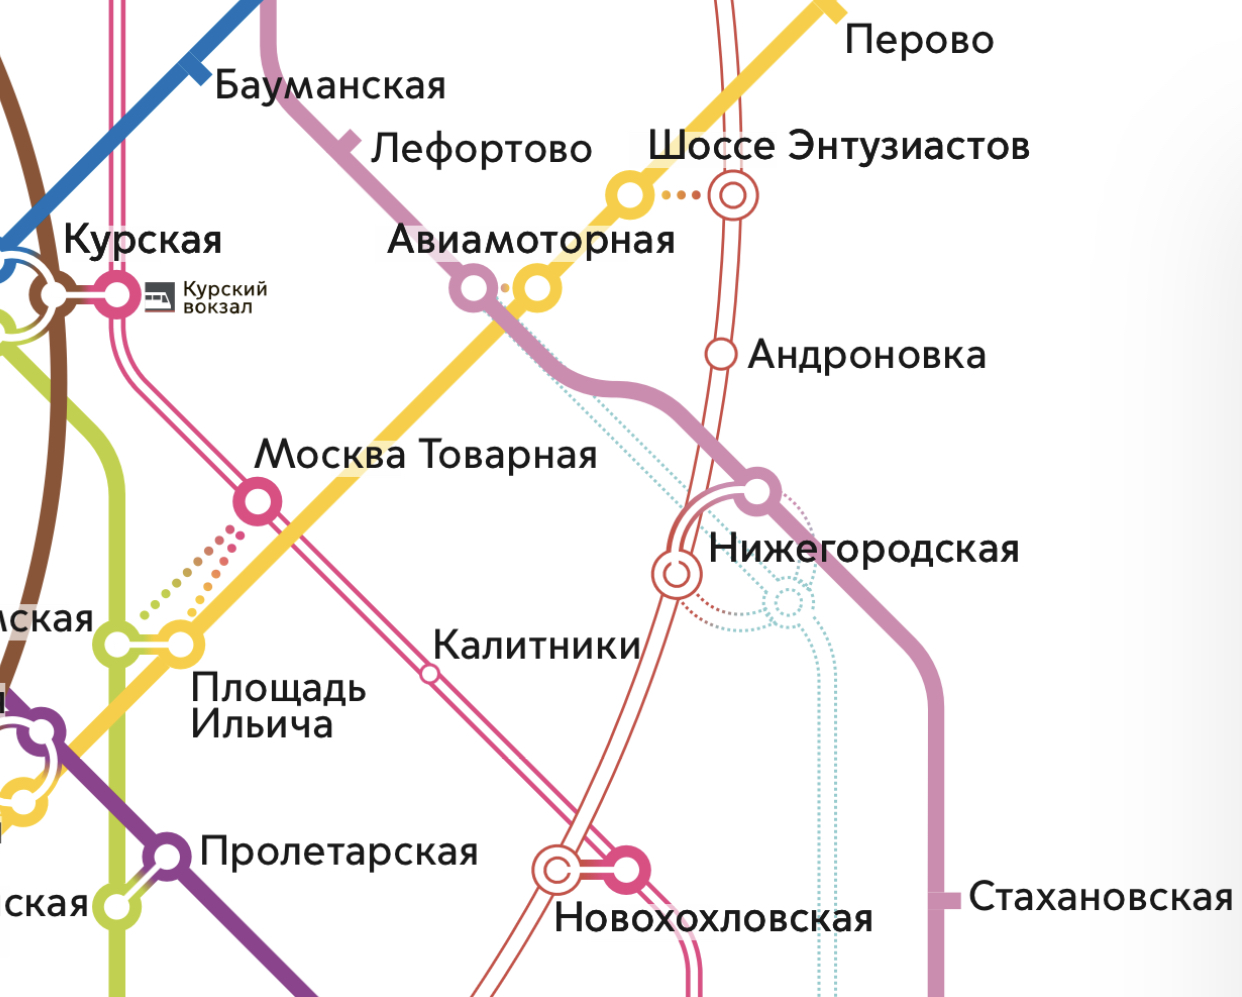 Станция «Нижегородская» официально появилась на схеме Московского метро